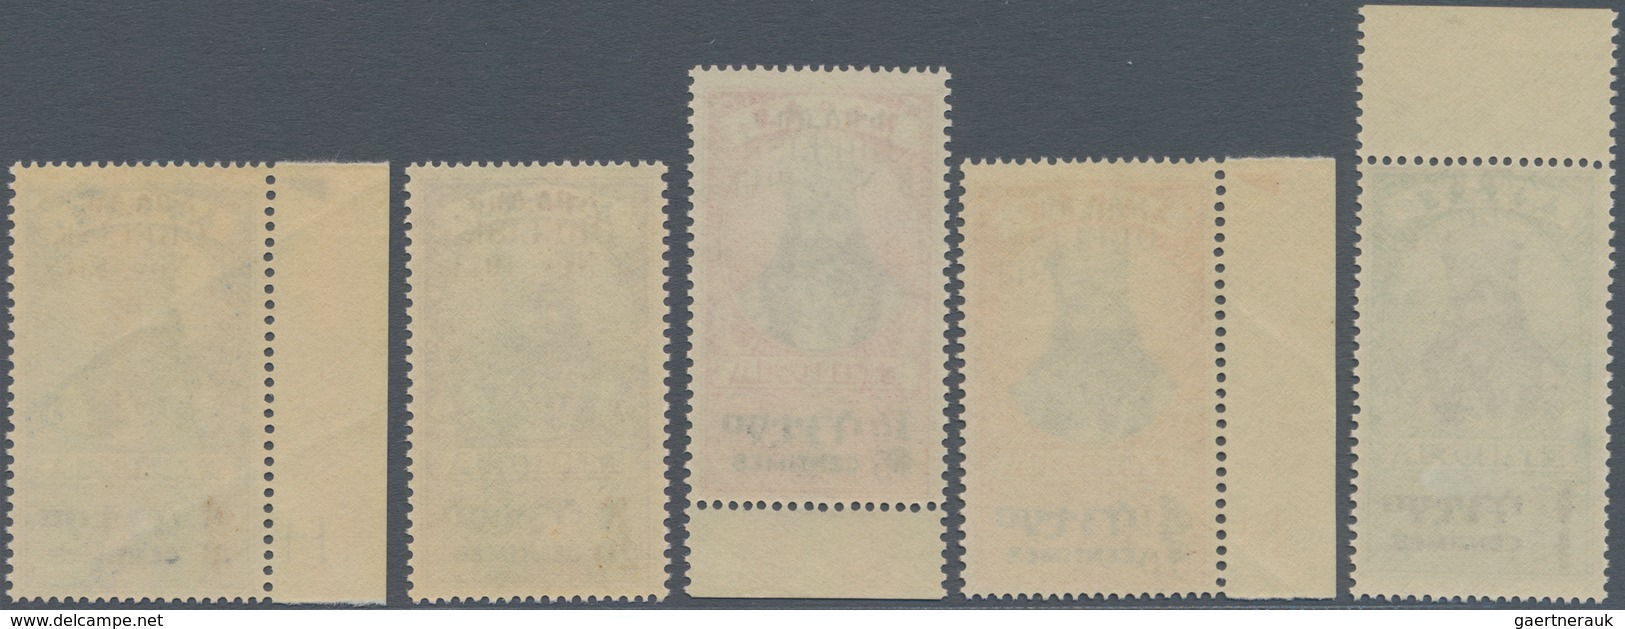 Äthiopien: 1943, War Memorial Overprints, Complete Set Of Five Values, Mint Never Hinged. - Äthiopien